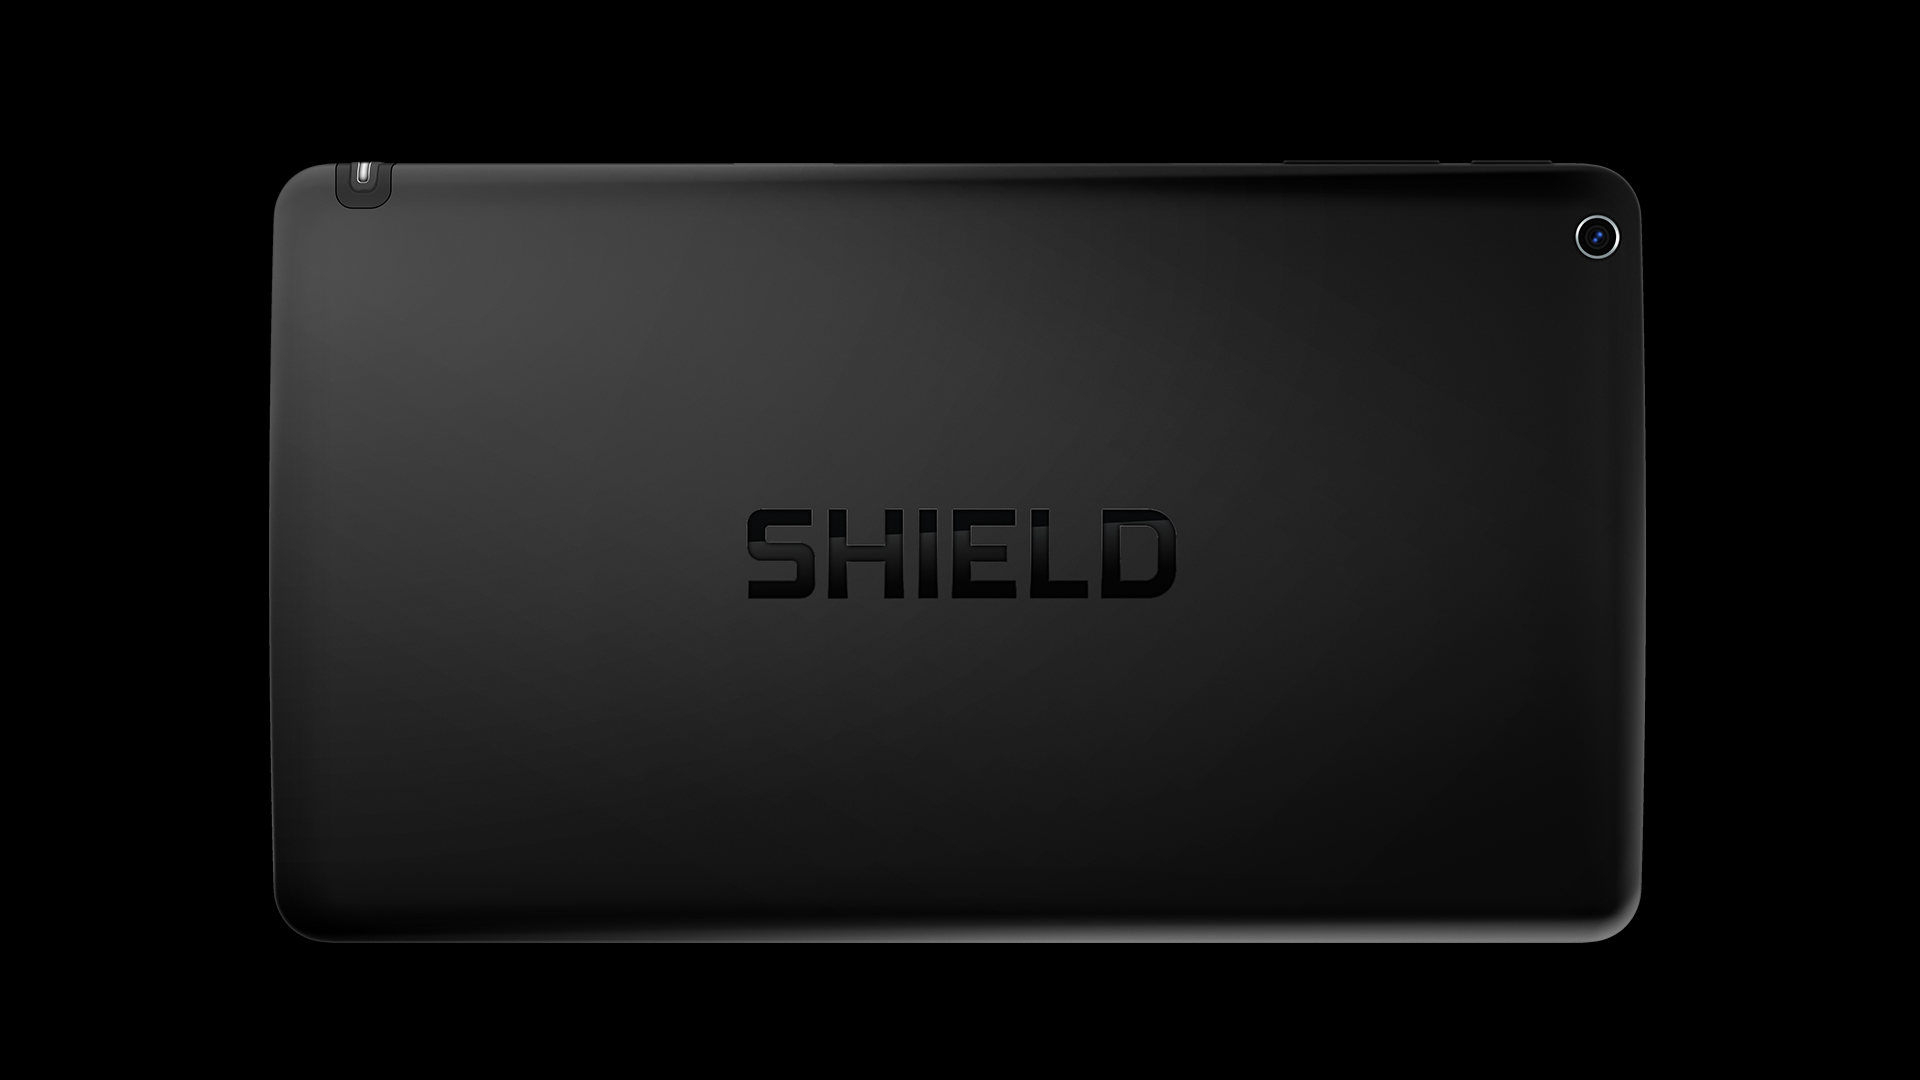 NVIDIA SHIELD タブレットは 5MP カメラを正面と背面に搭載しています。